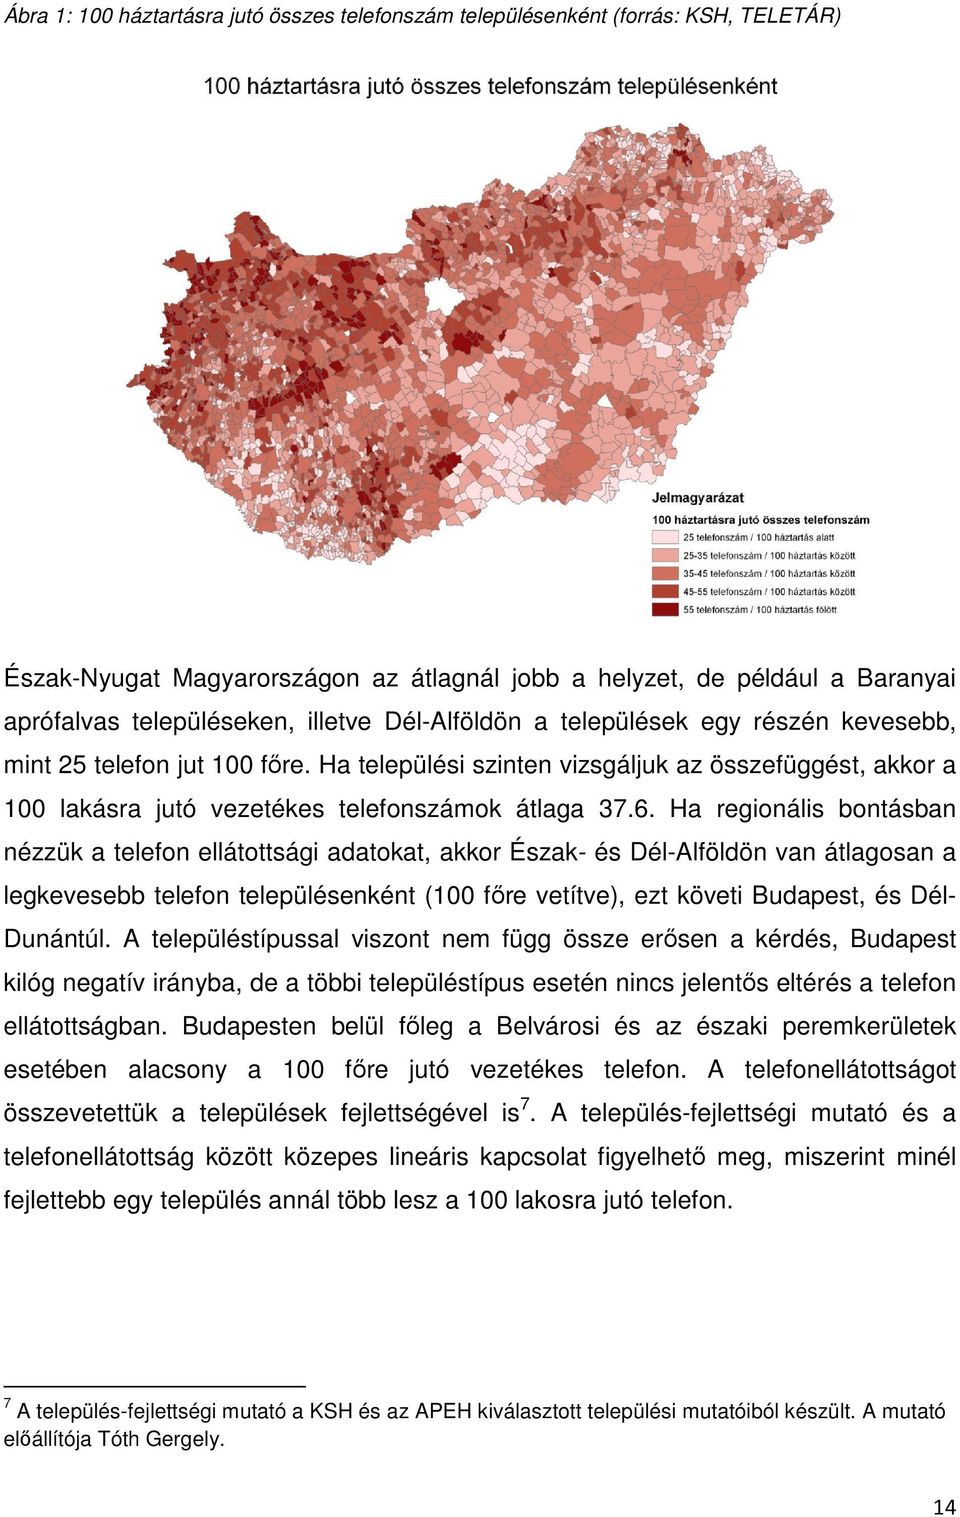 Ha regionális bontásban nézzük a telefon ellátottsági adatokat, akkor Észak- és Dél-Alföldön van átlagosan a legkevesebb telefon településenként (100 fıre vetítve), ezt követi Budapest, és Dél-